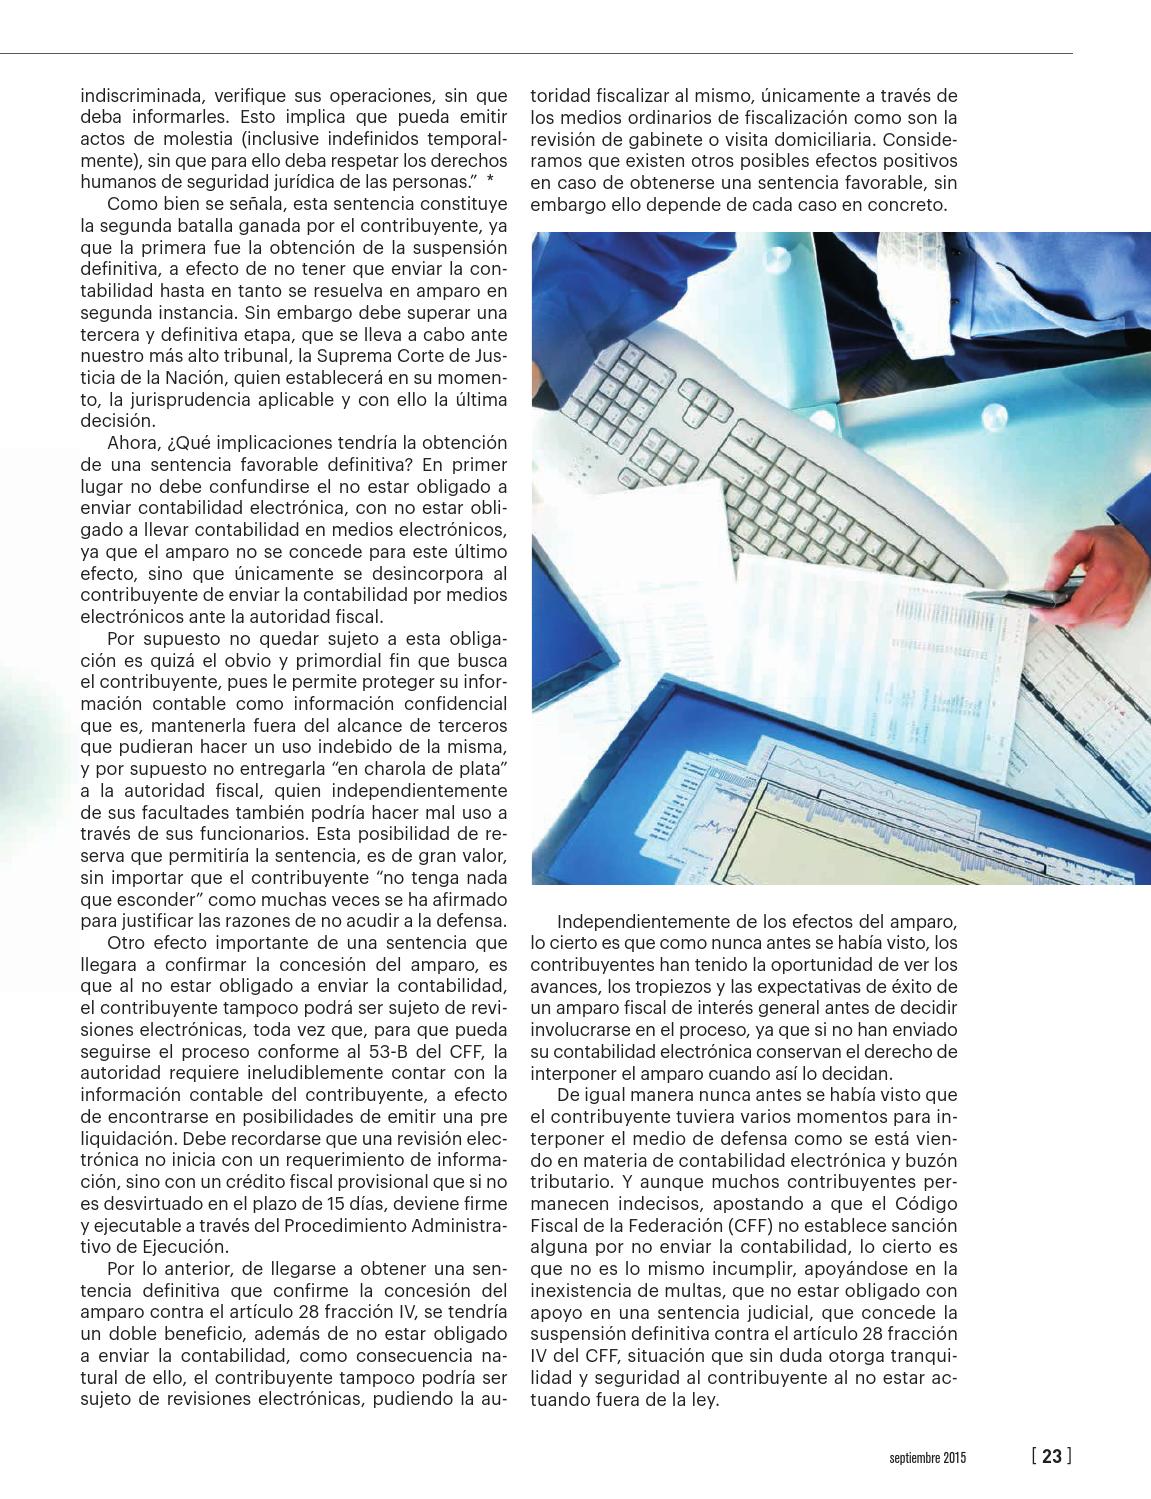 2015-09-08_amparo_contabilidad_electronica (2)